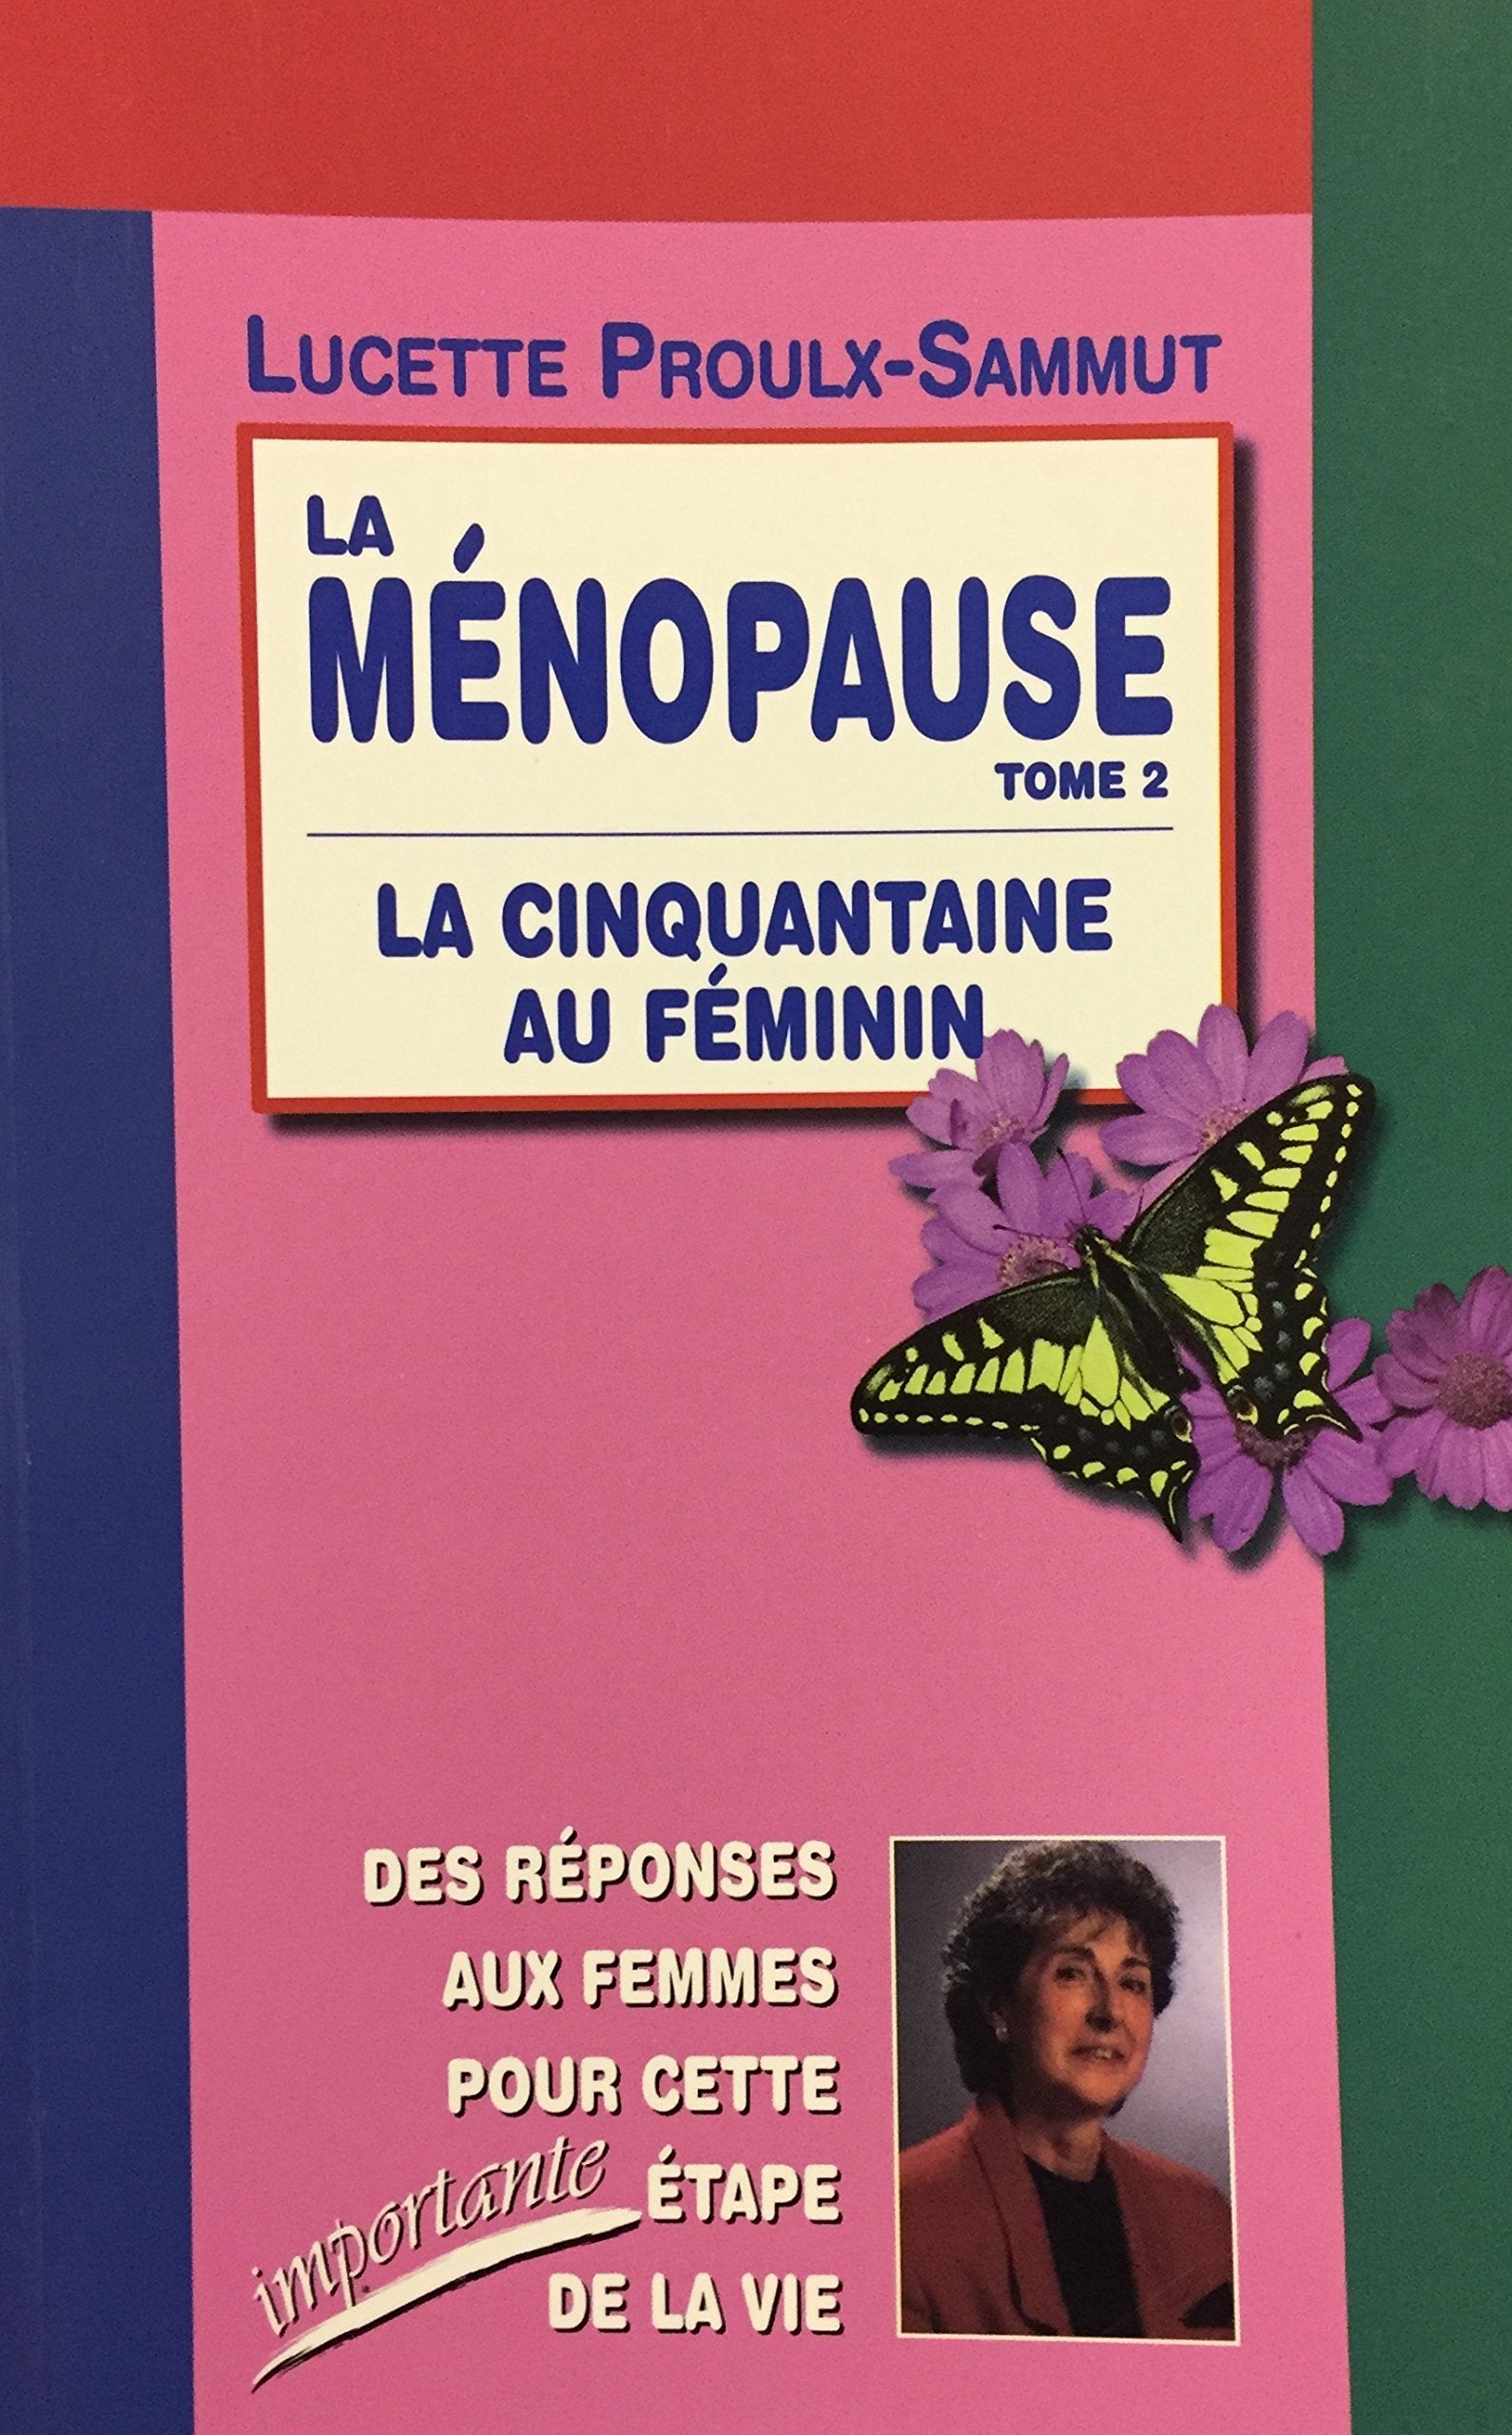 Livre ISBN 2921735393 La ménopause # 2 : La cinquantaine au féminin (Lucette Proulx-Sammut)